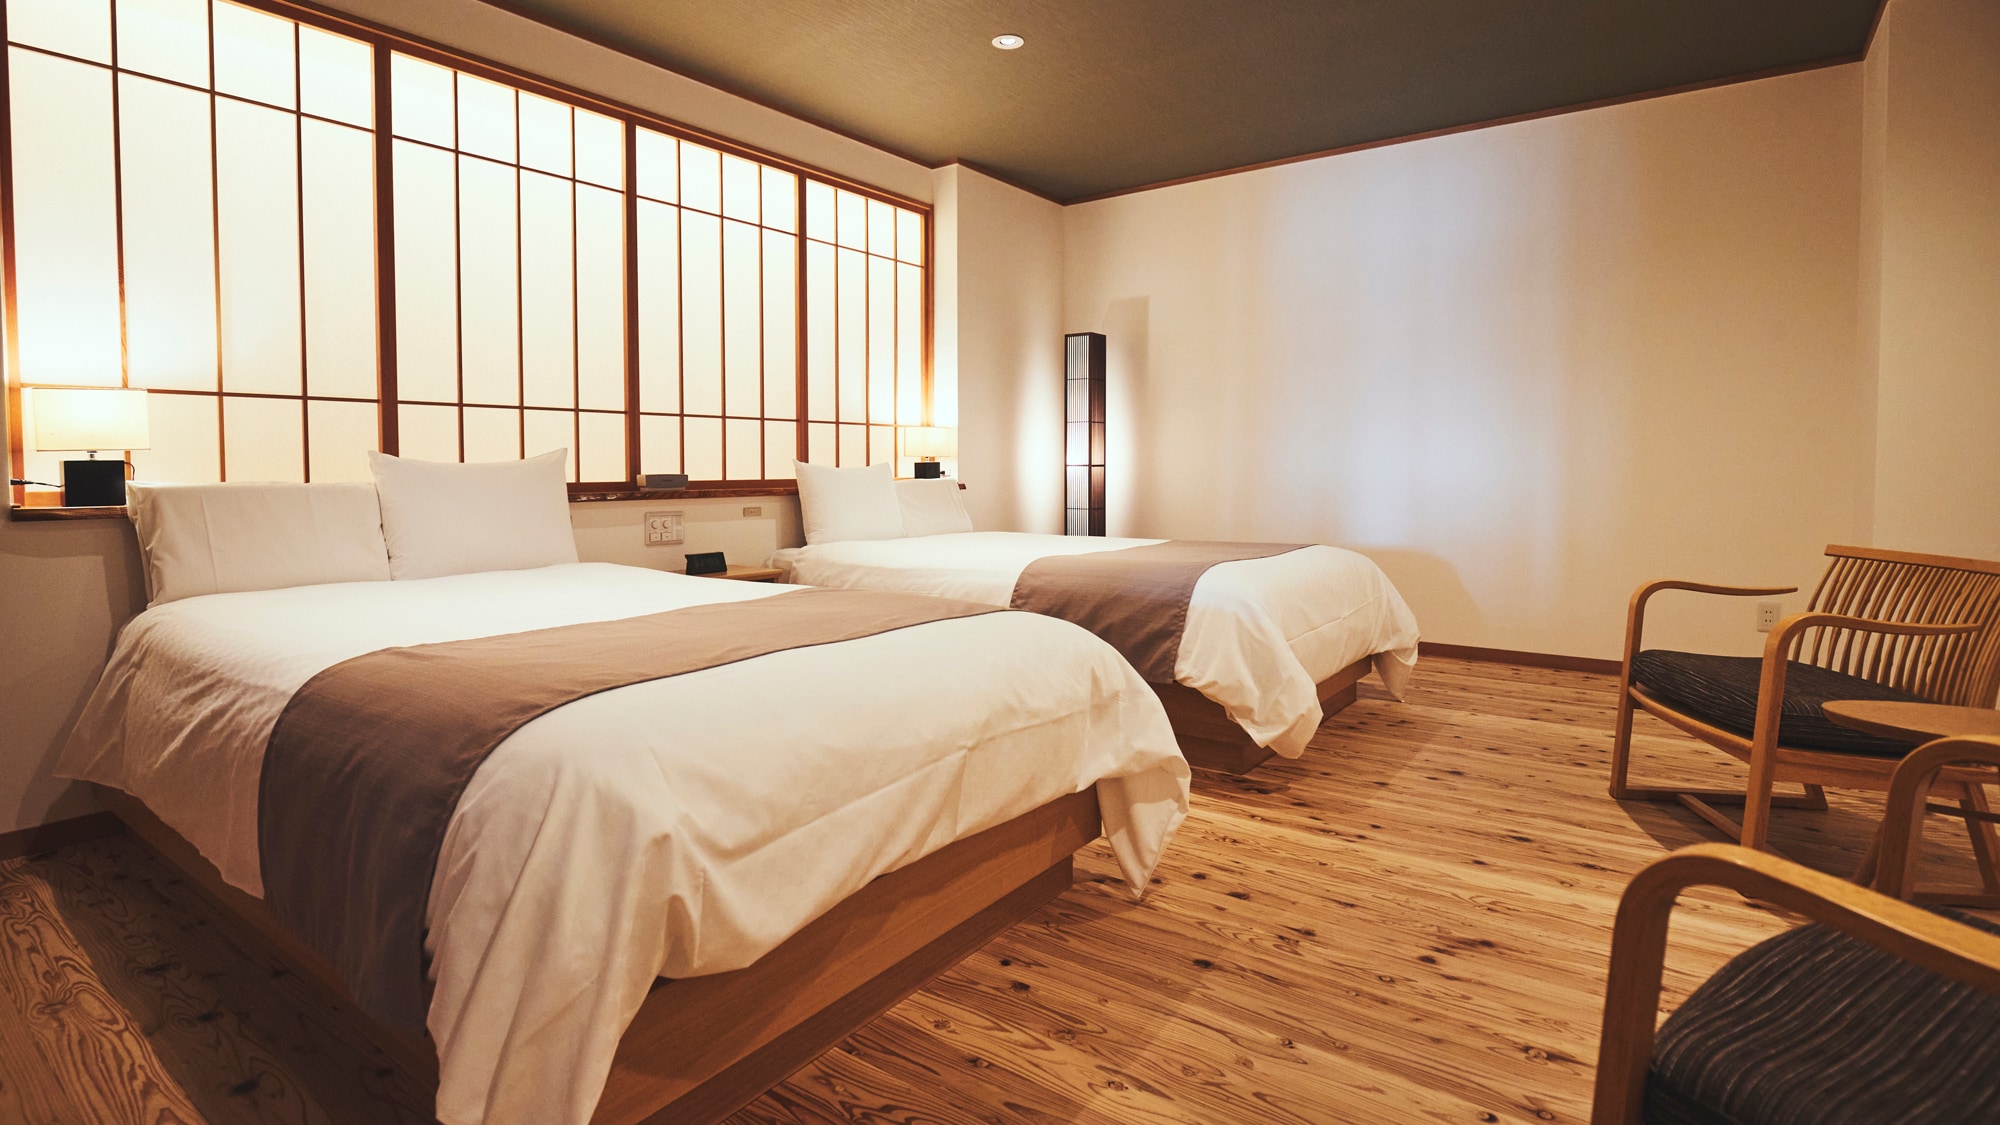 "Kayu berumur akustik" digunakan untuk lantai kamar tidur. Ruang nyaman yang memanfaatkan kekuatan asli "pohon hidup".